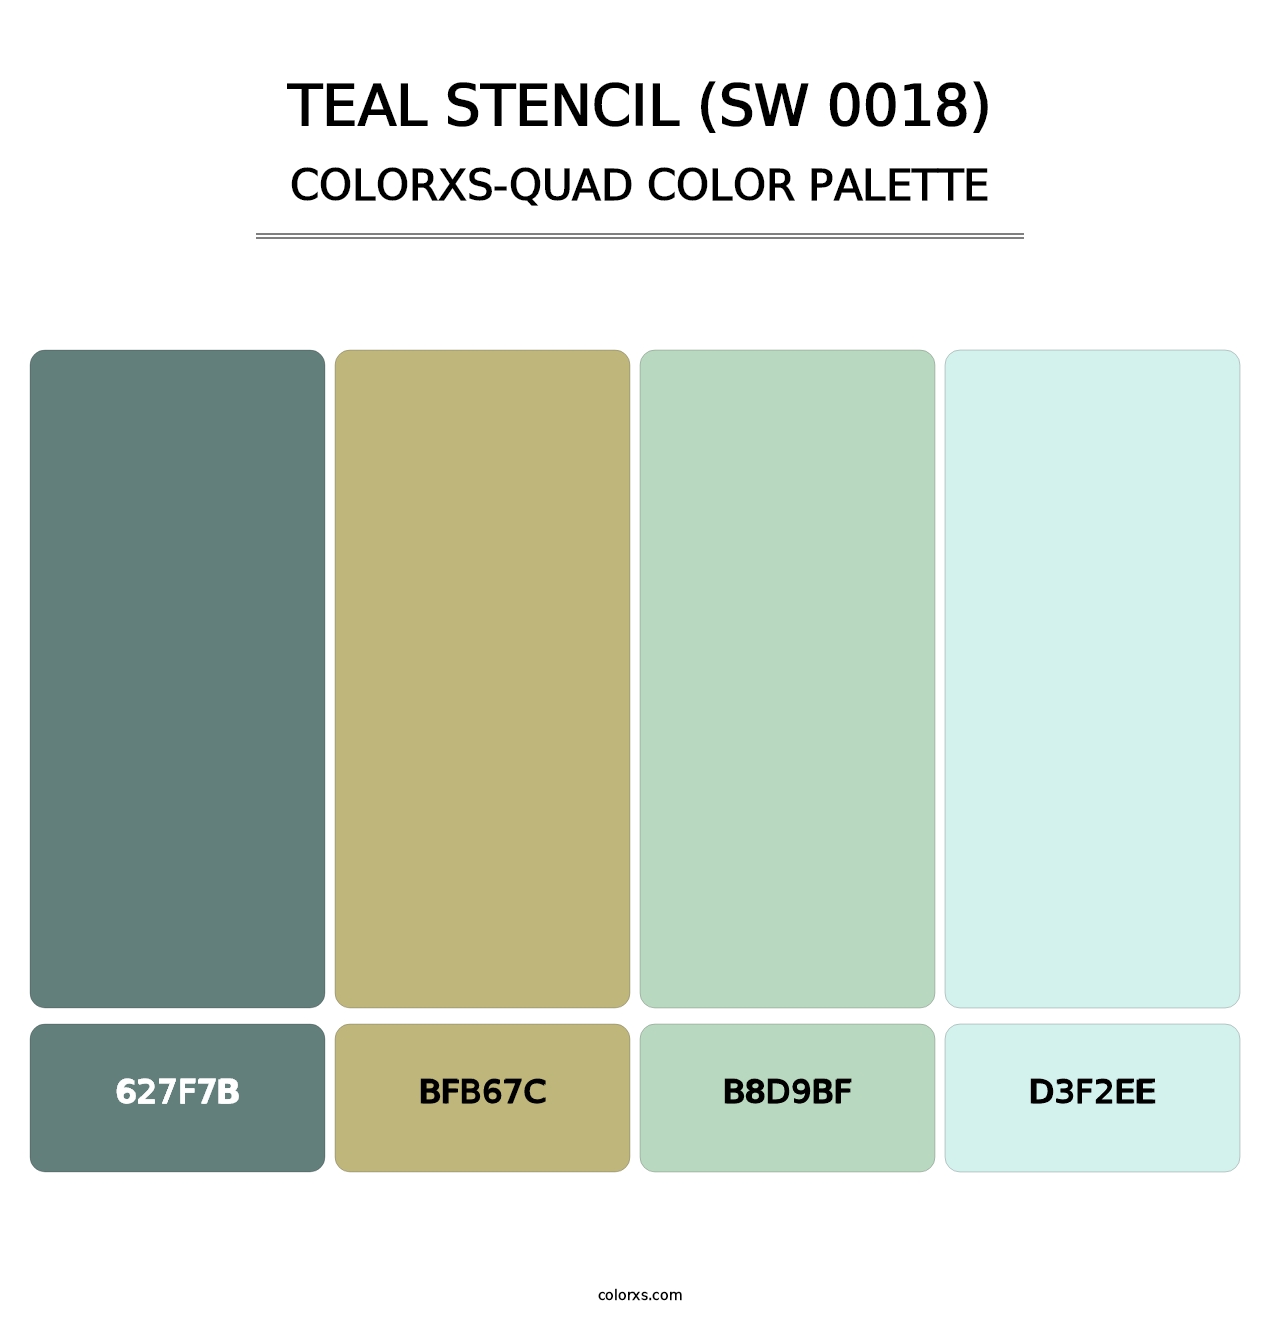 Teal Stencil (SW 0018) - Colorxs Quad Palette